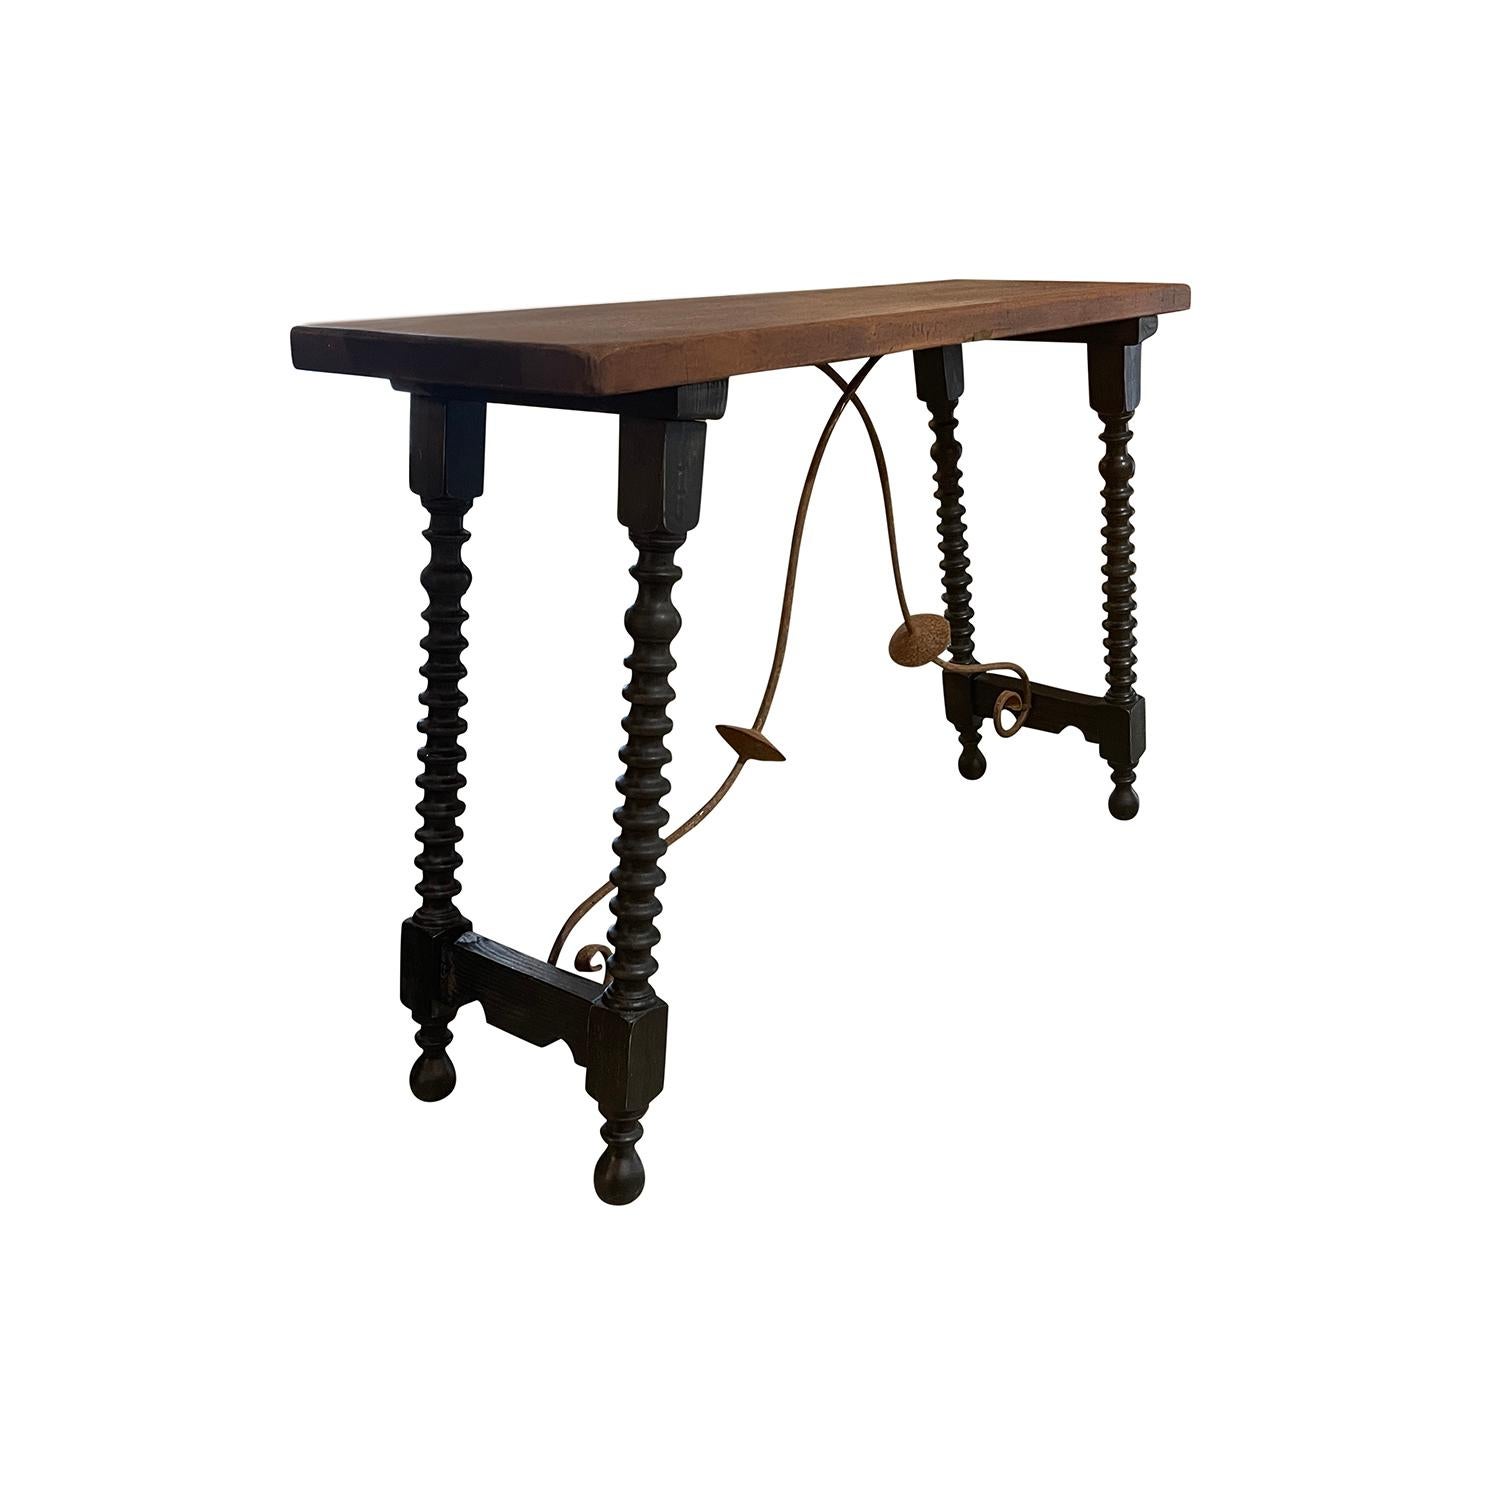 Une table ou console ancienne du 19ème siècle de style Renaissance toscane est surmontée d'un plateau rectangulaire en noyer aux couleurs chaudes et riches, en bon état. La base de la table a des pieds tordus tournés à la main en noyer, refinis avec